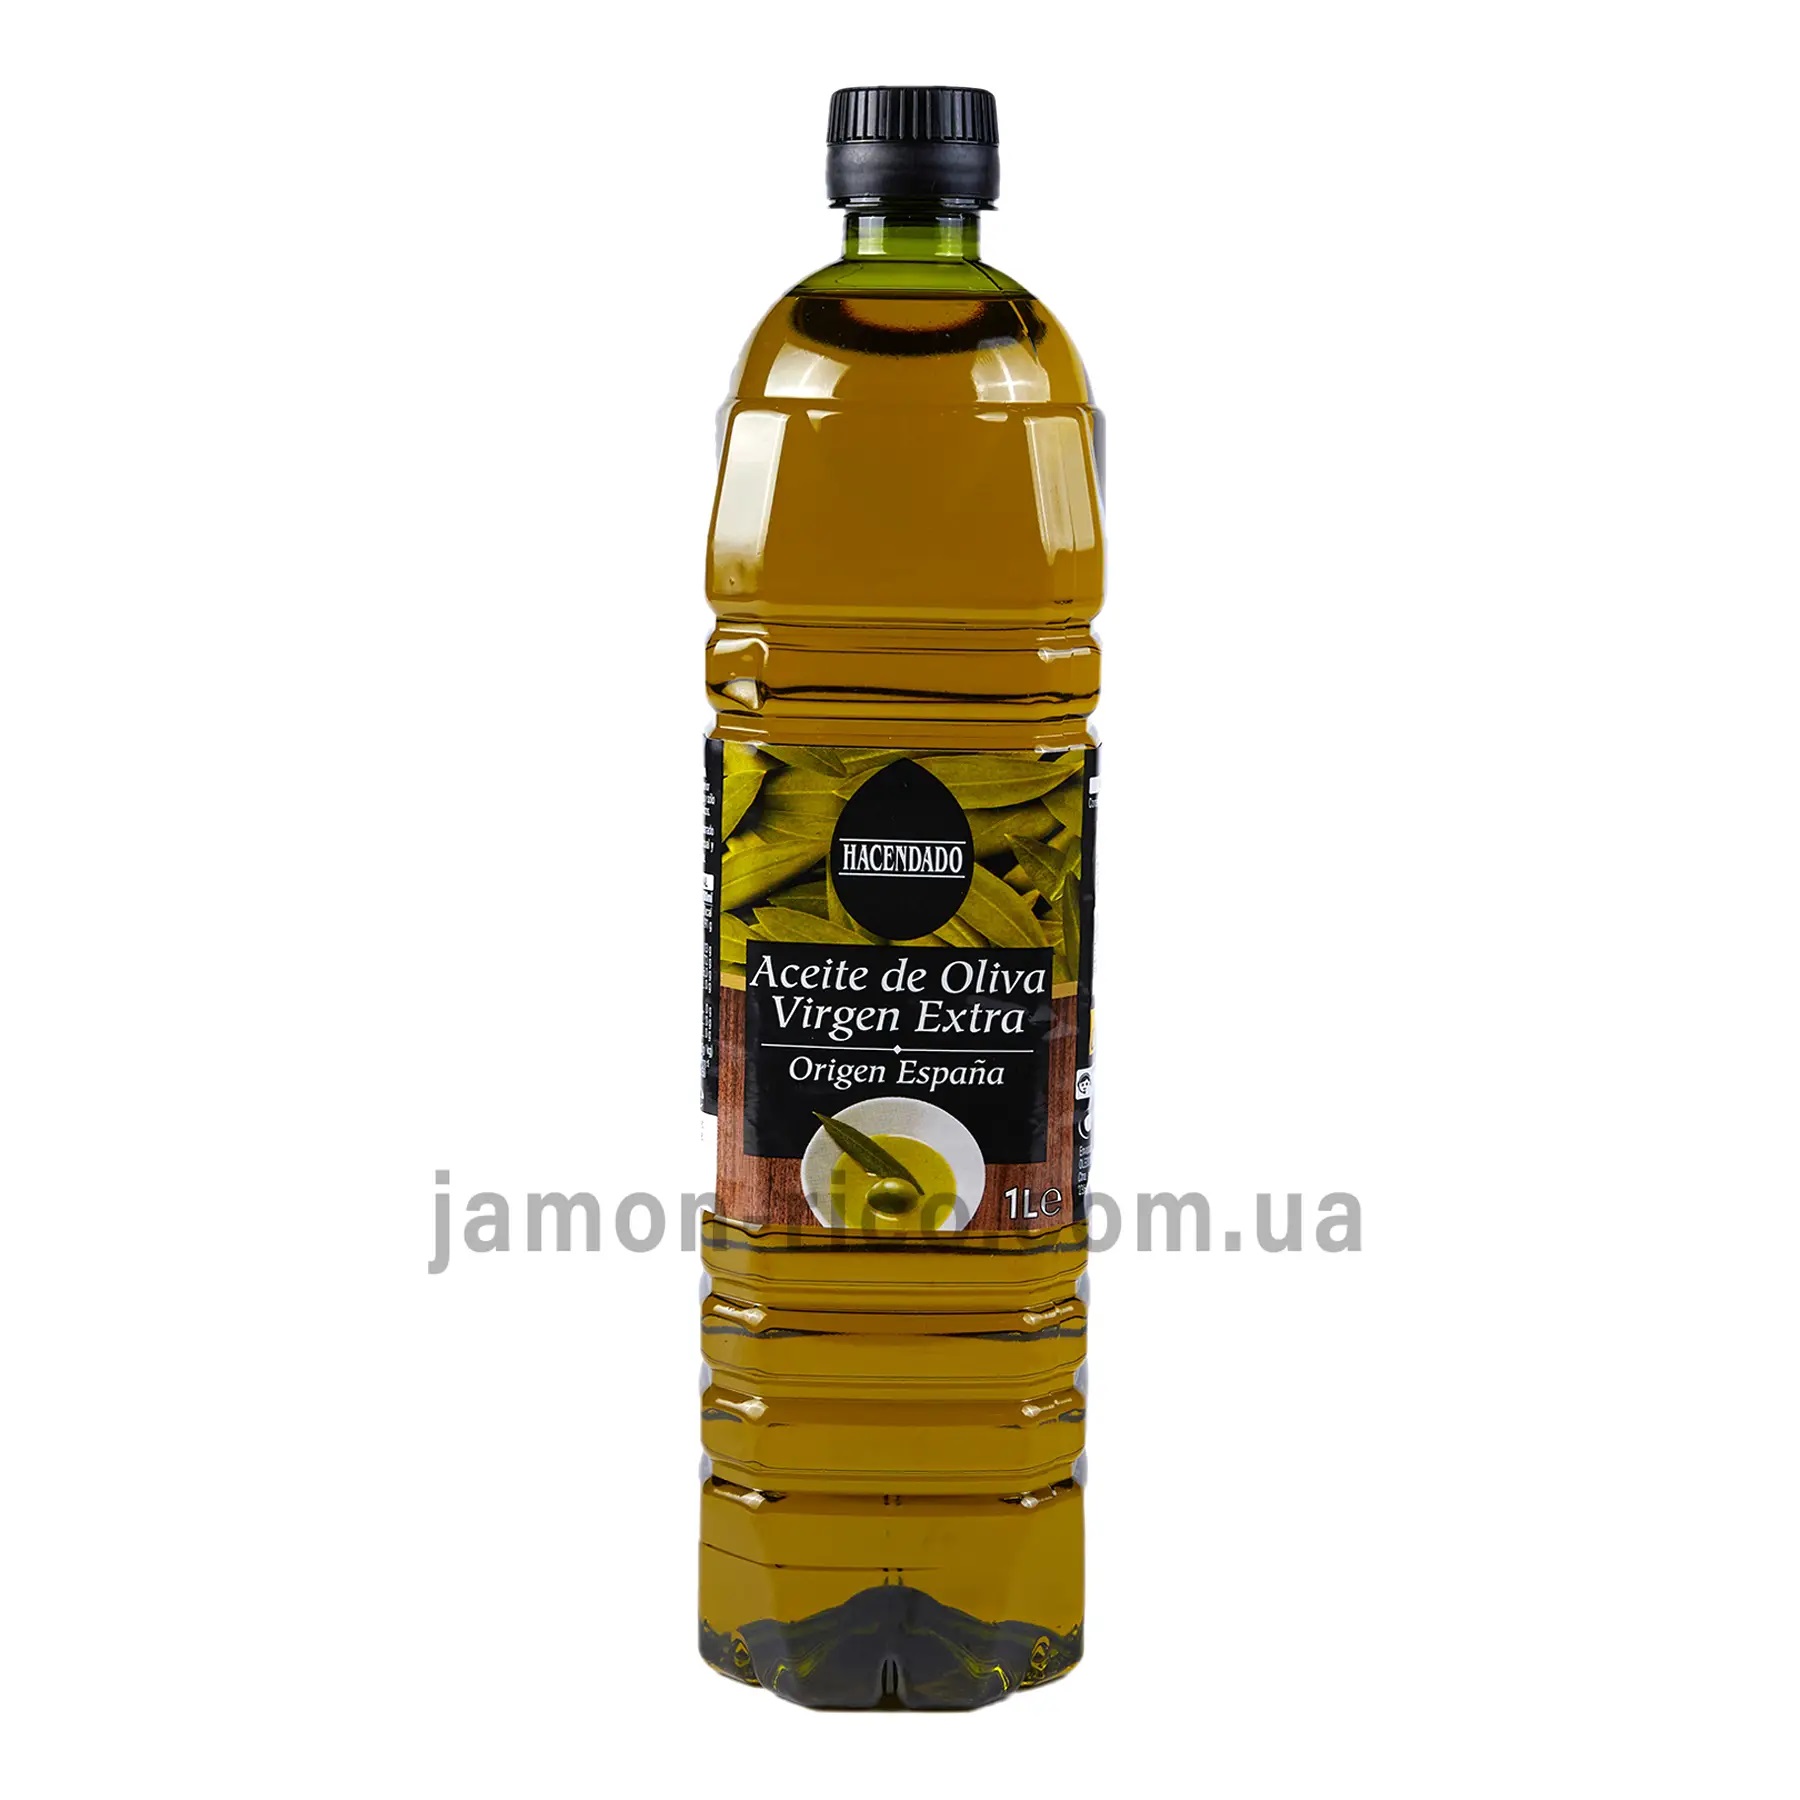 купити оливкову олію екстра вірджин